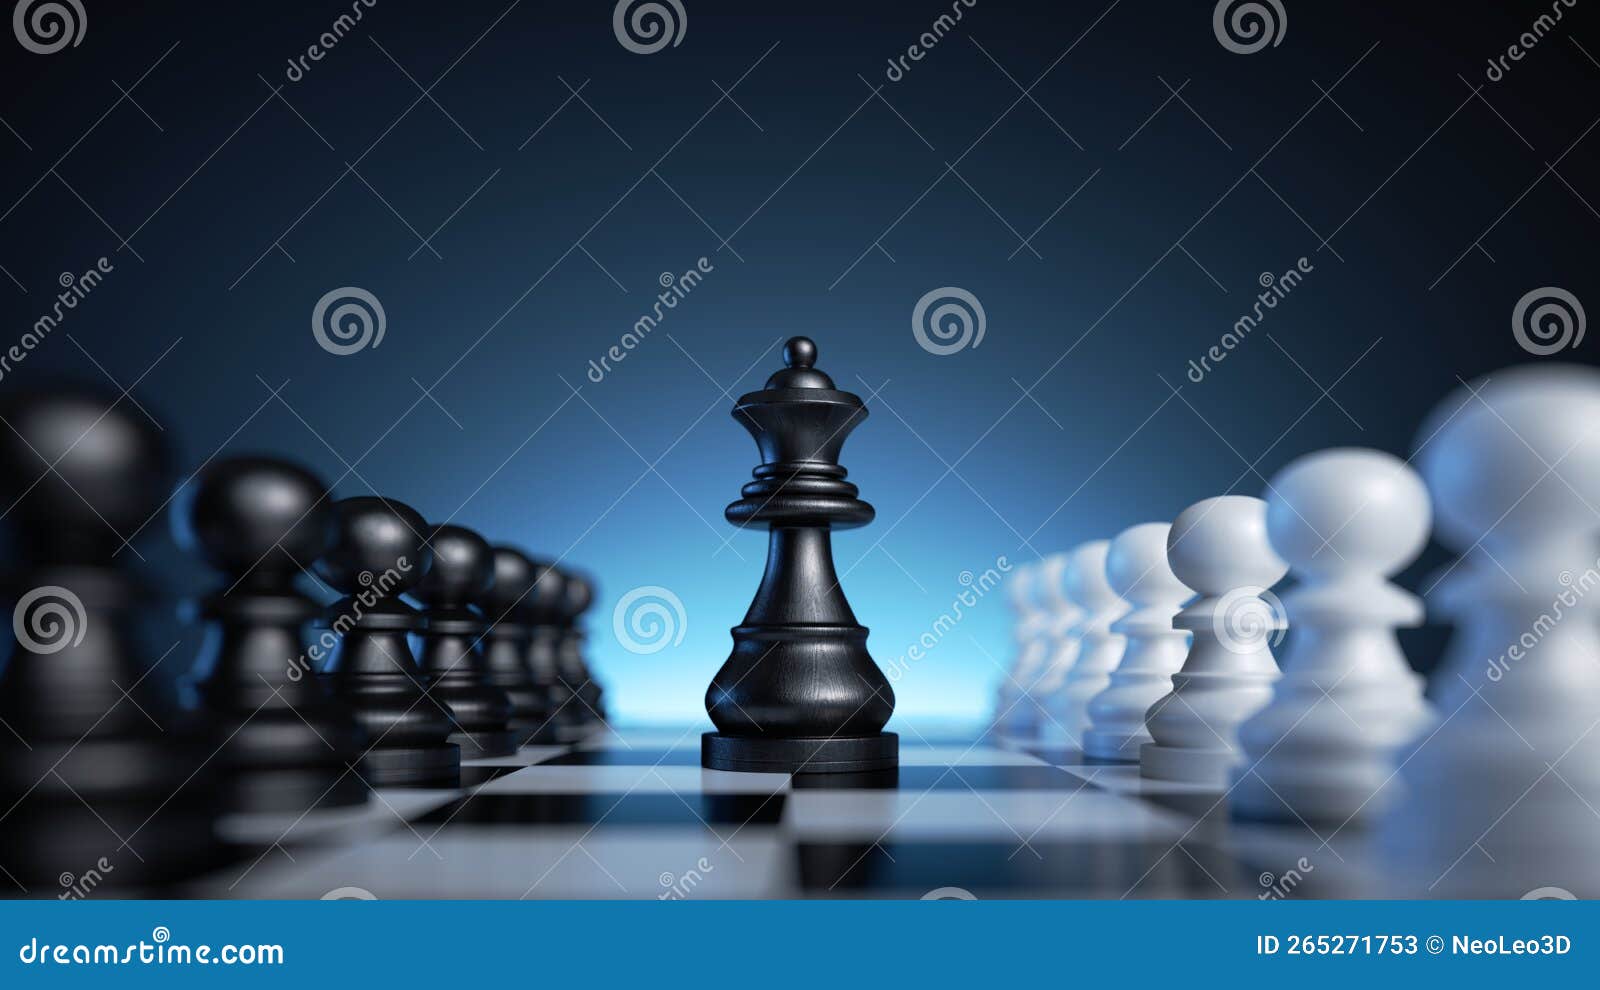 Peças de jogo de xadrez em figuras de tabuleiro de xadrez rei rainha torre  cavaleiro bispo peão isolado no fundo branco